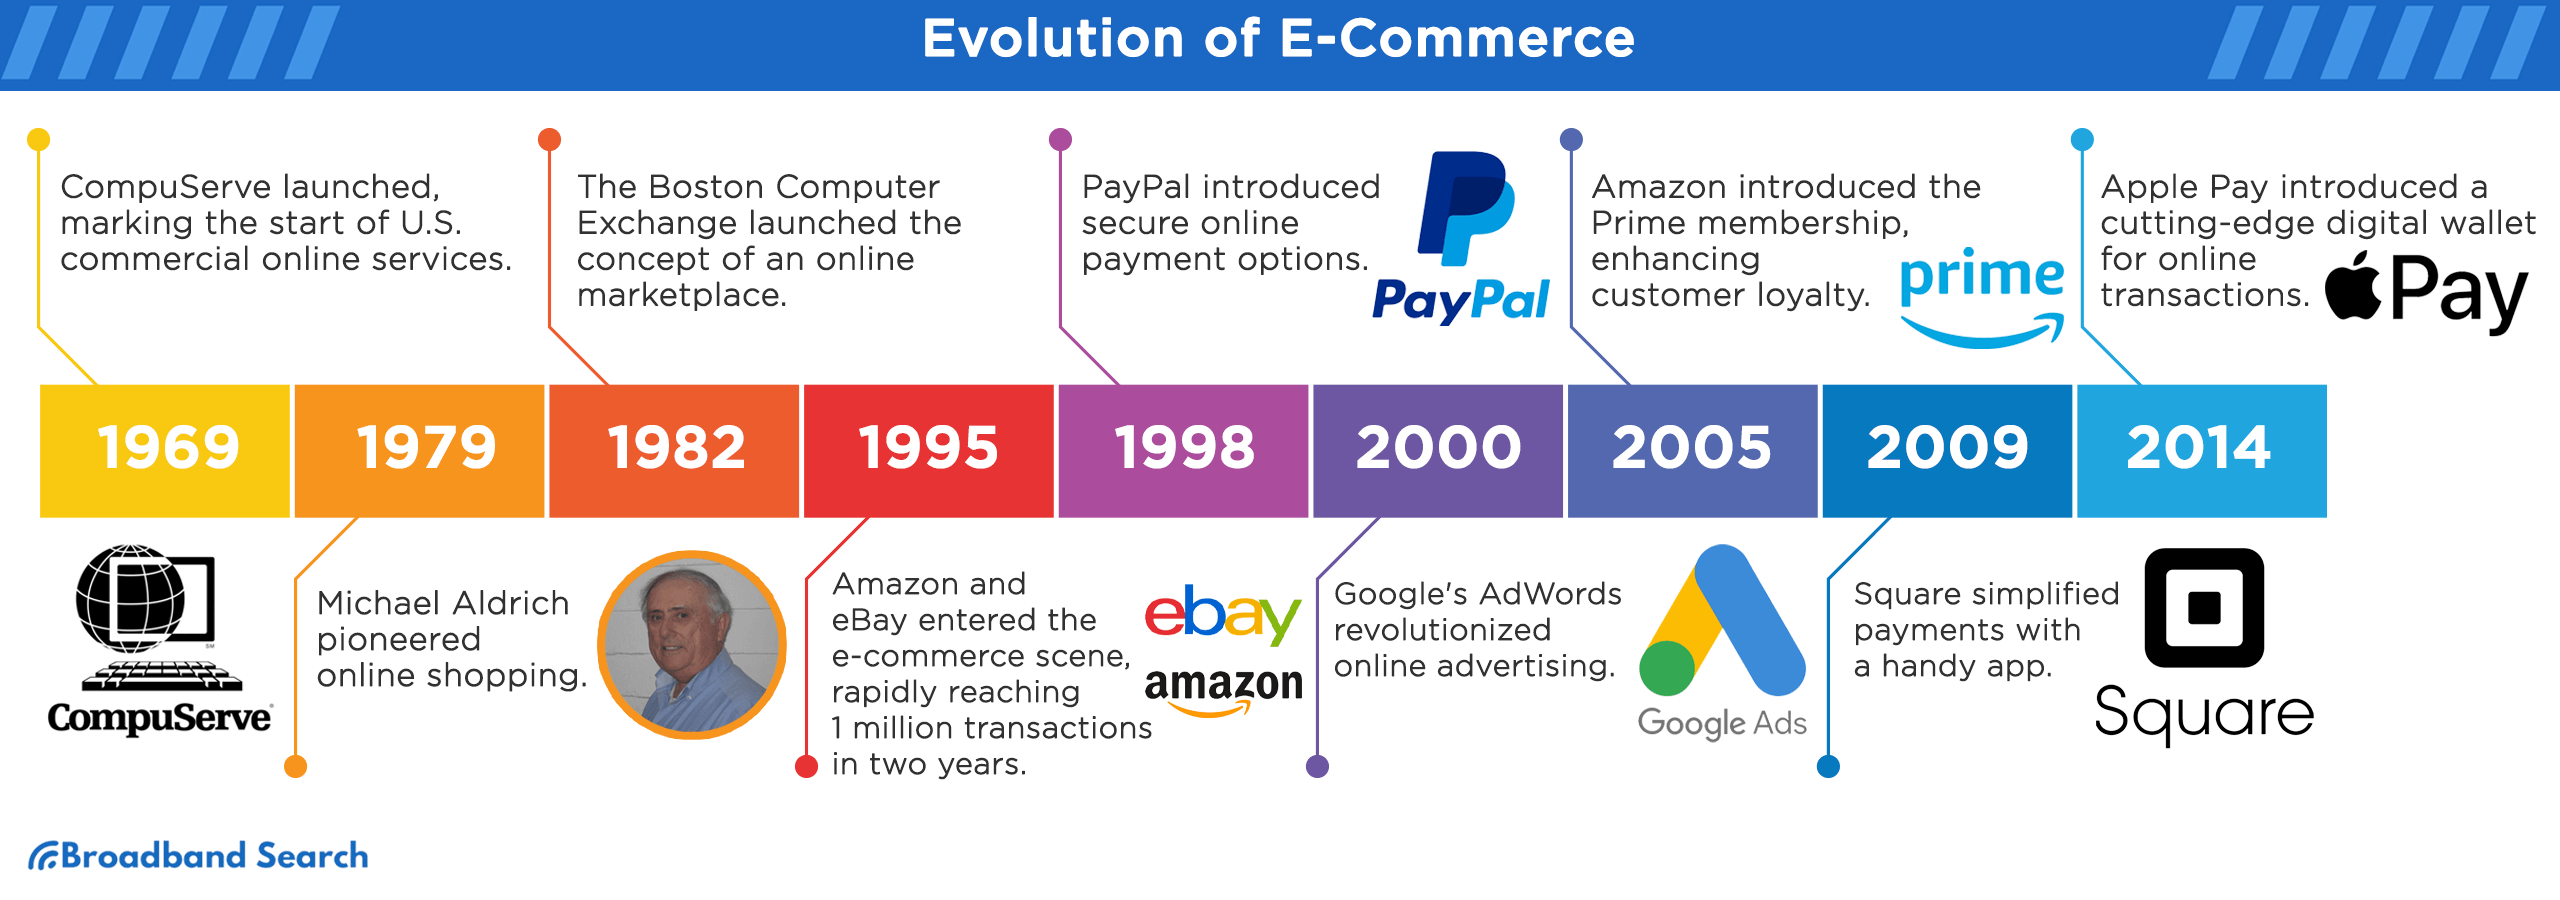 Evolution of E-Commerce